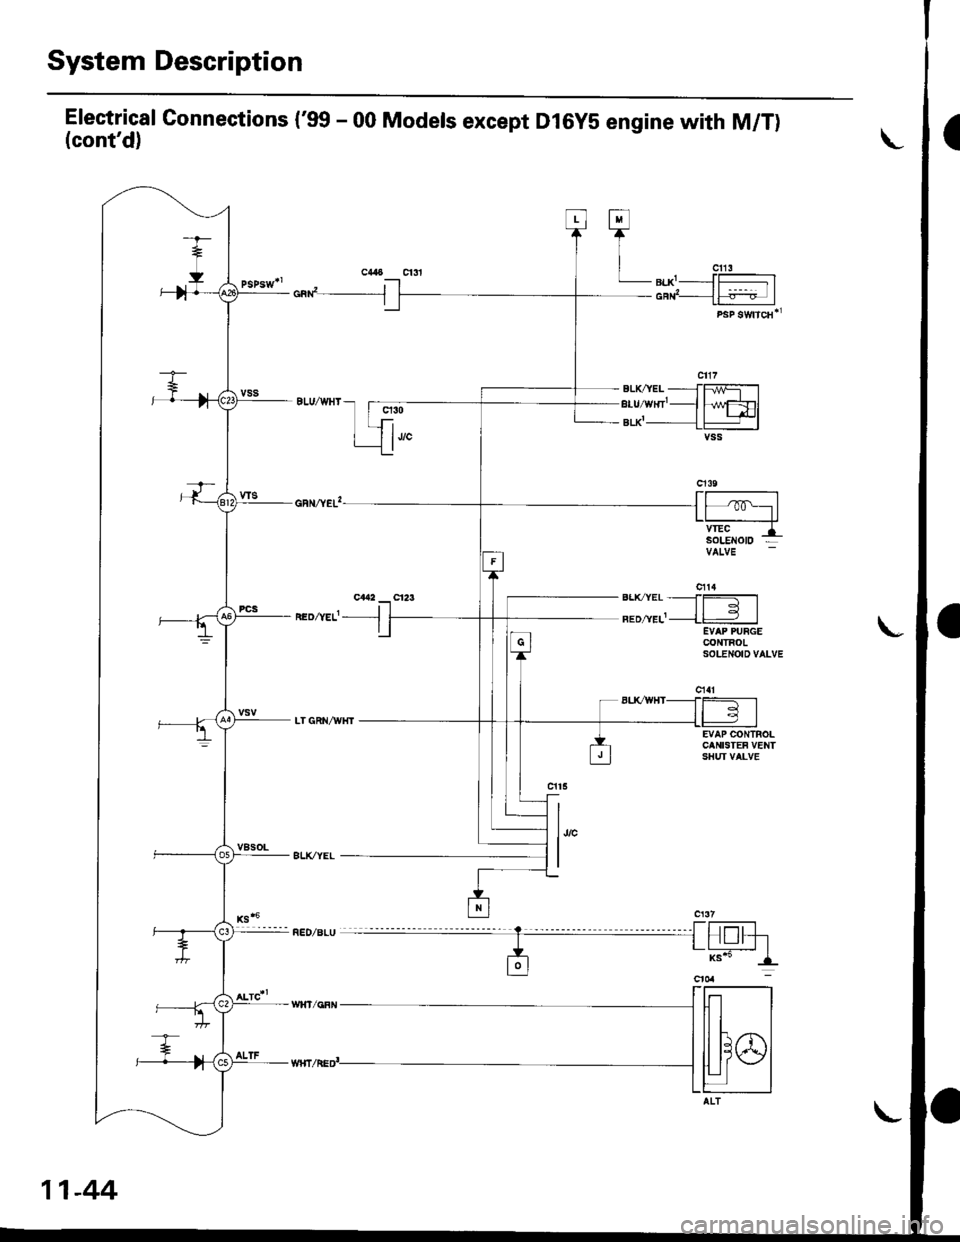 HONDA CIVIC 1999 6.G Workshop Manual System Description
Electrical Gonnections (99 - 00 Models except Dl6yS engine with M/T)(contd)
cad__J
neozvef- -l
q30
1""
h/wFDlt+l-lvss
EVAP CONTROLCANISTEF VENTSHUI VALVE
l,,"
I
Fl
TI
| "u,LB|.X-